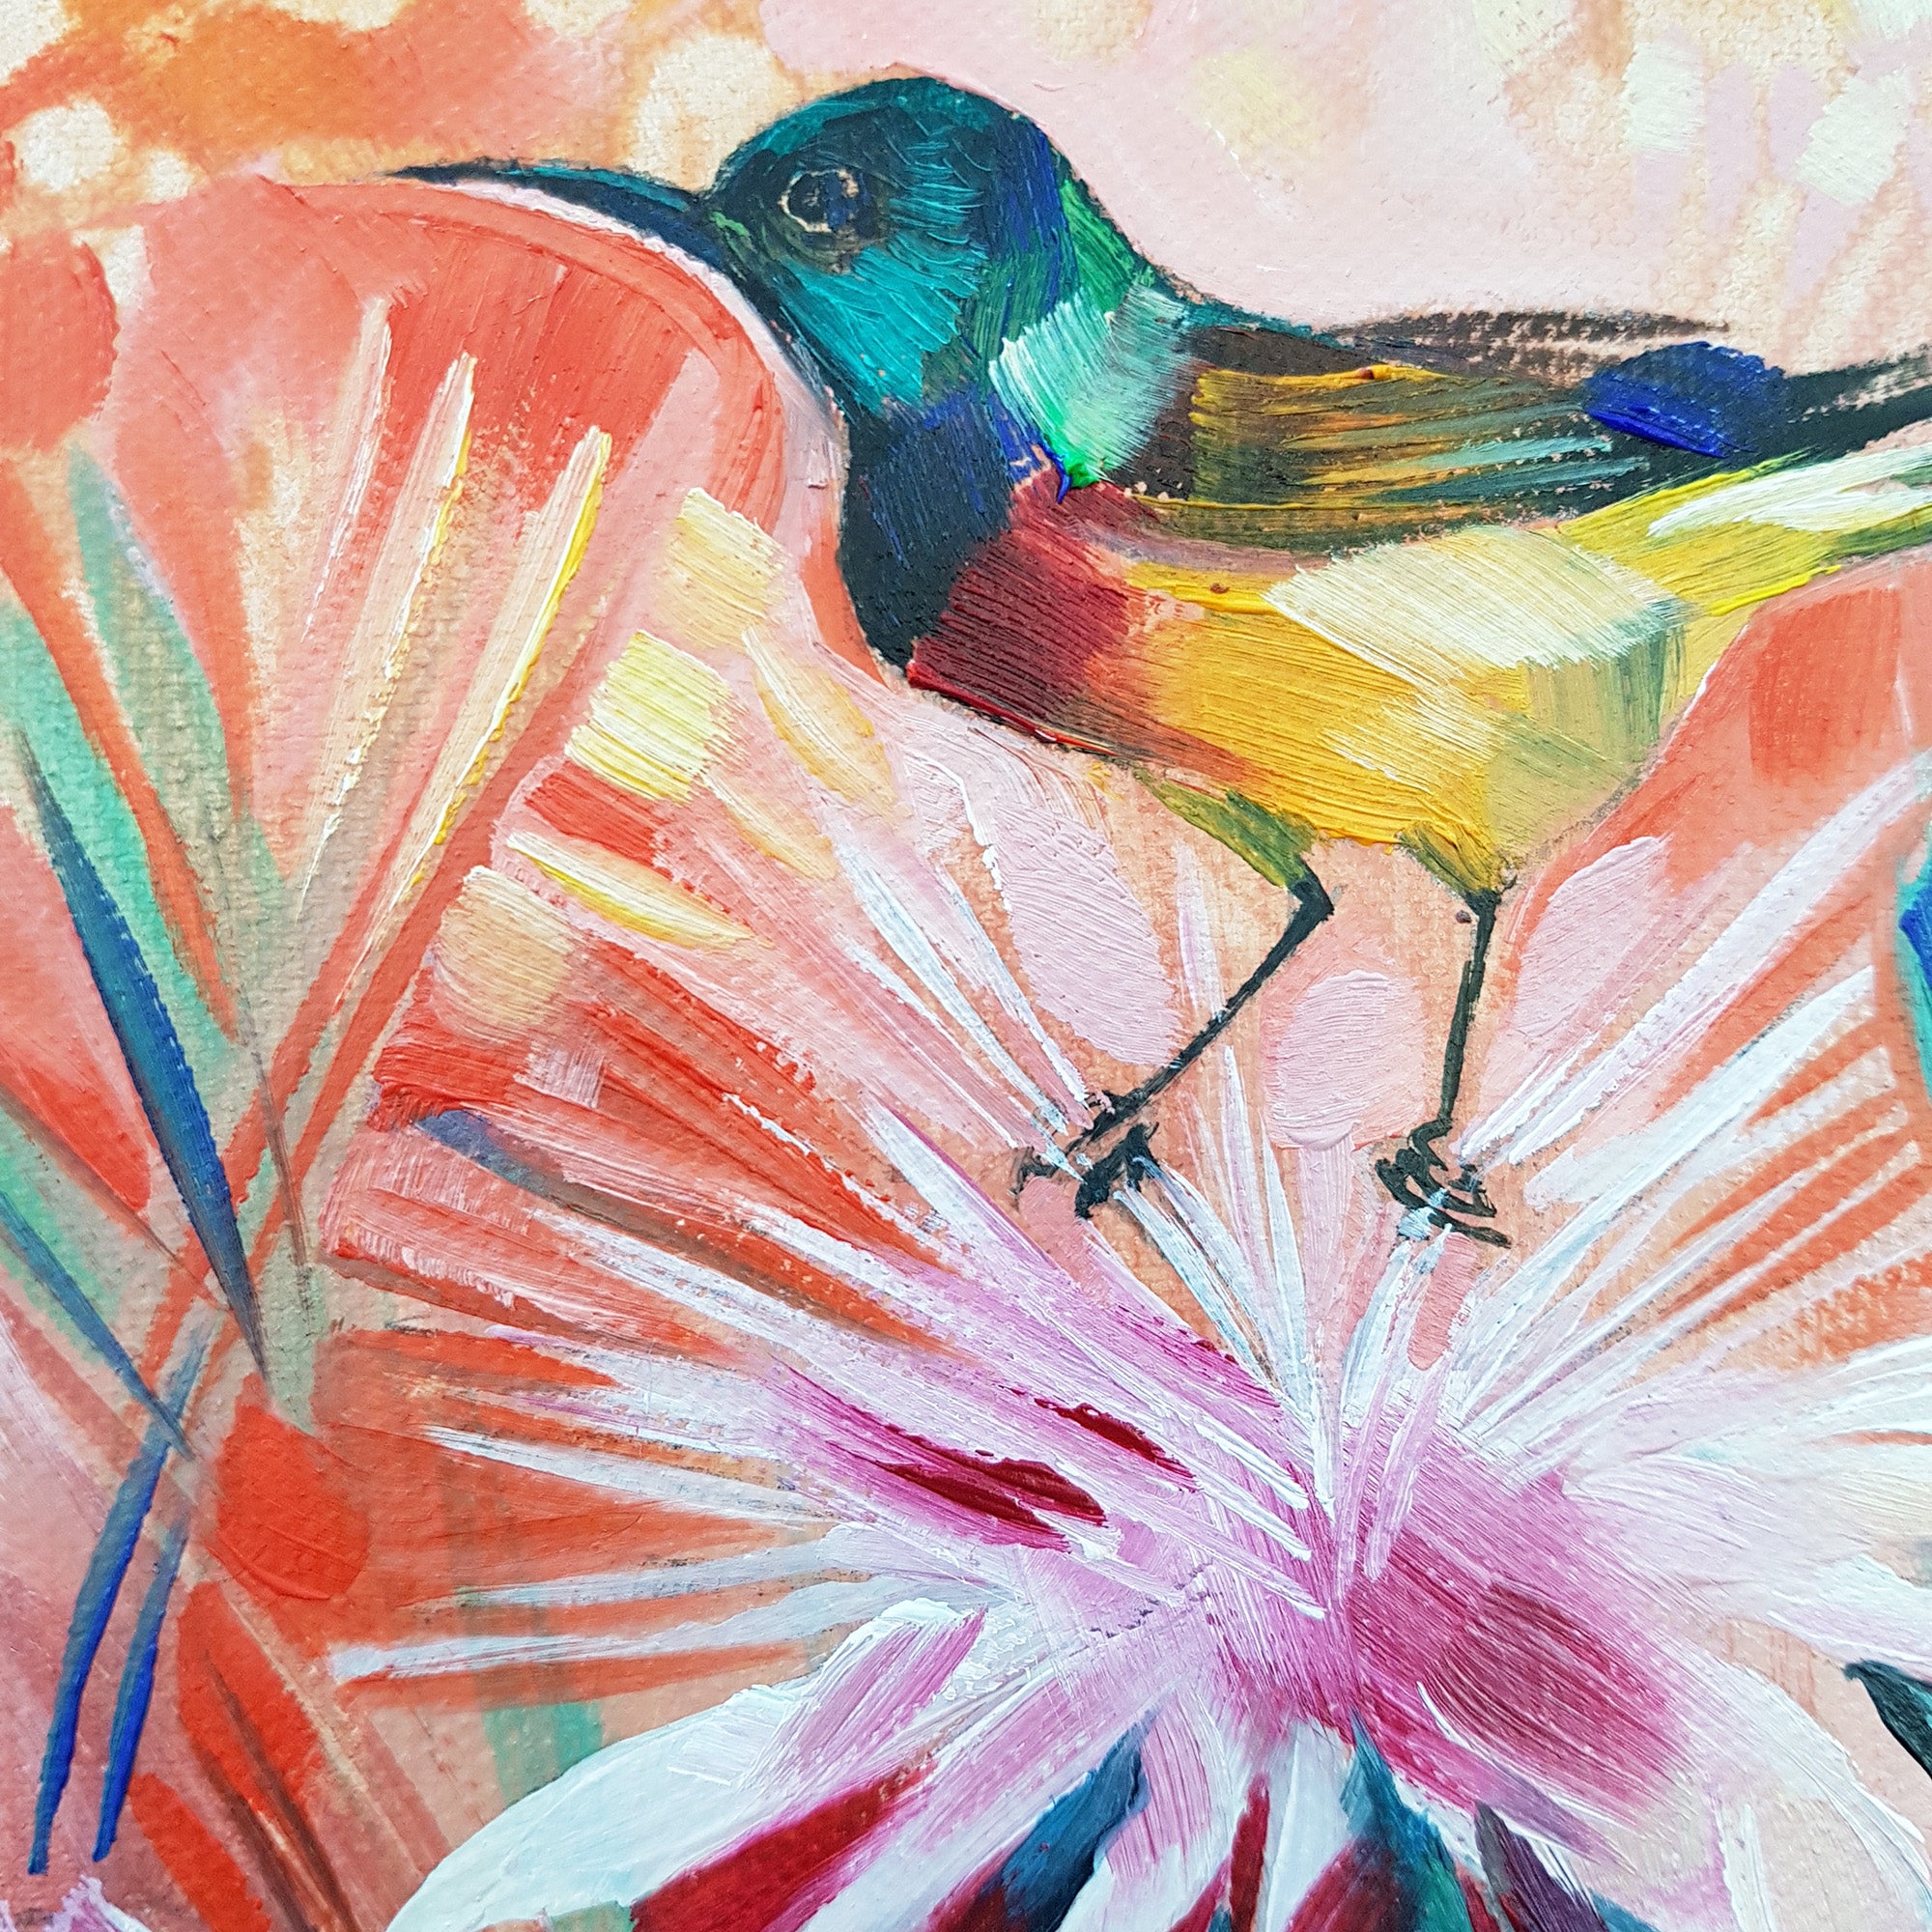 Sunbird Mini oil-on-canvas